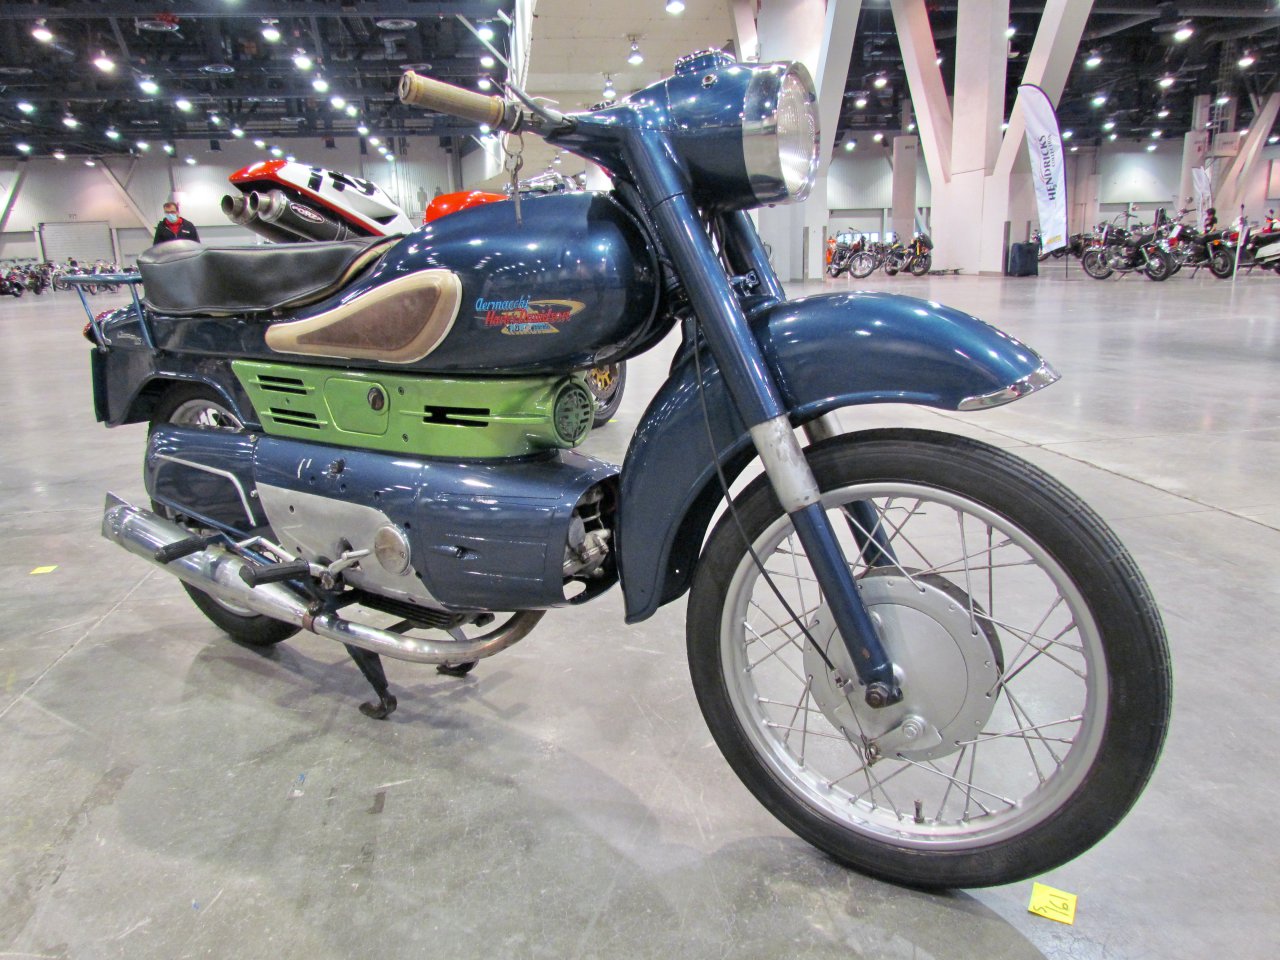 motorcycles, Vintage motorcycles get new venue for Mecum’s Las Vegas auction, ClassicCars.com Journal